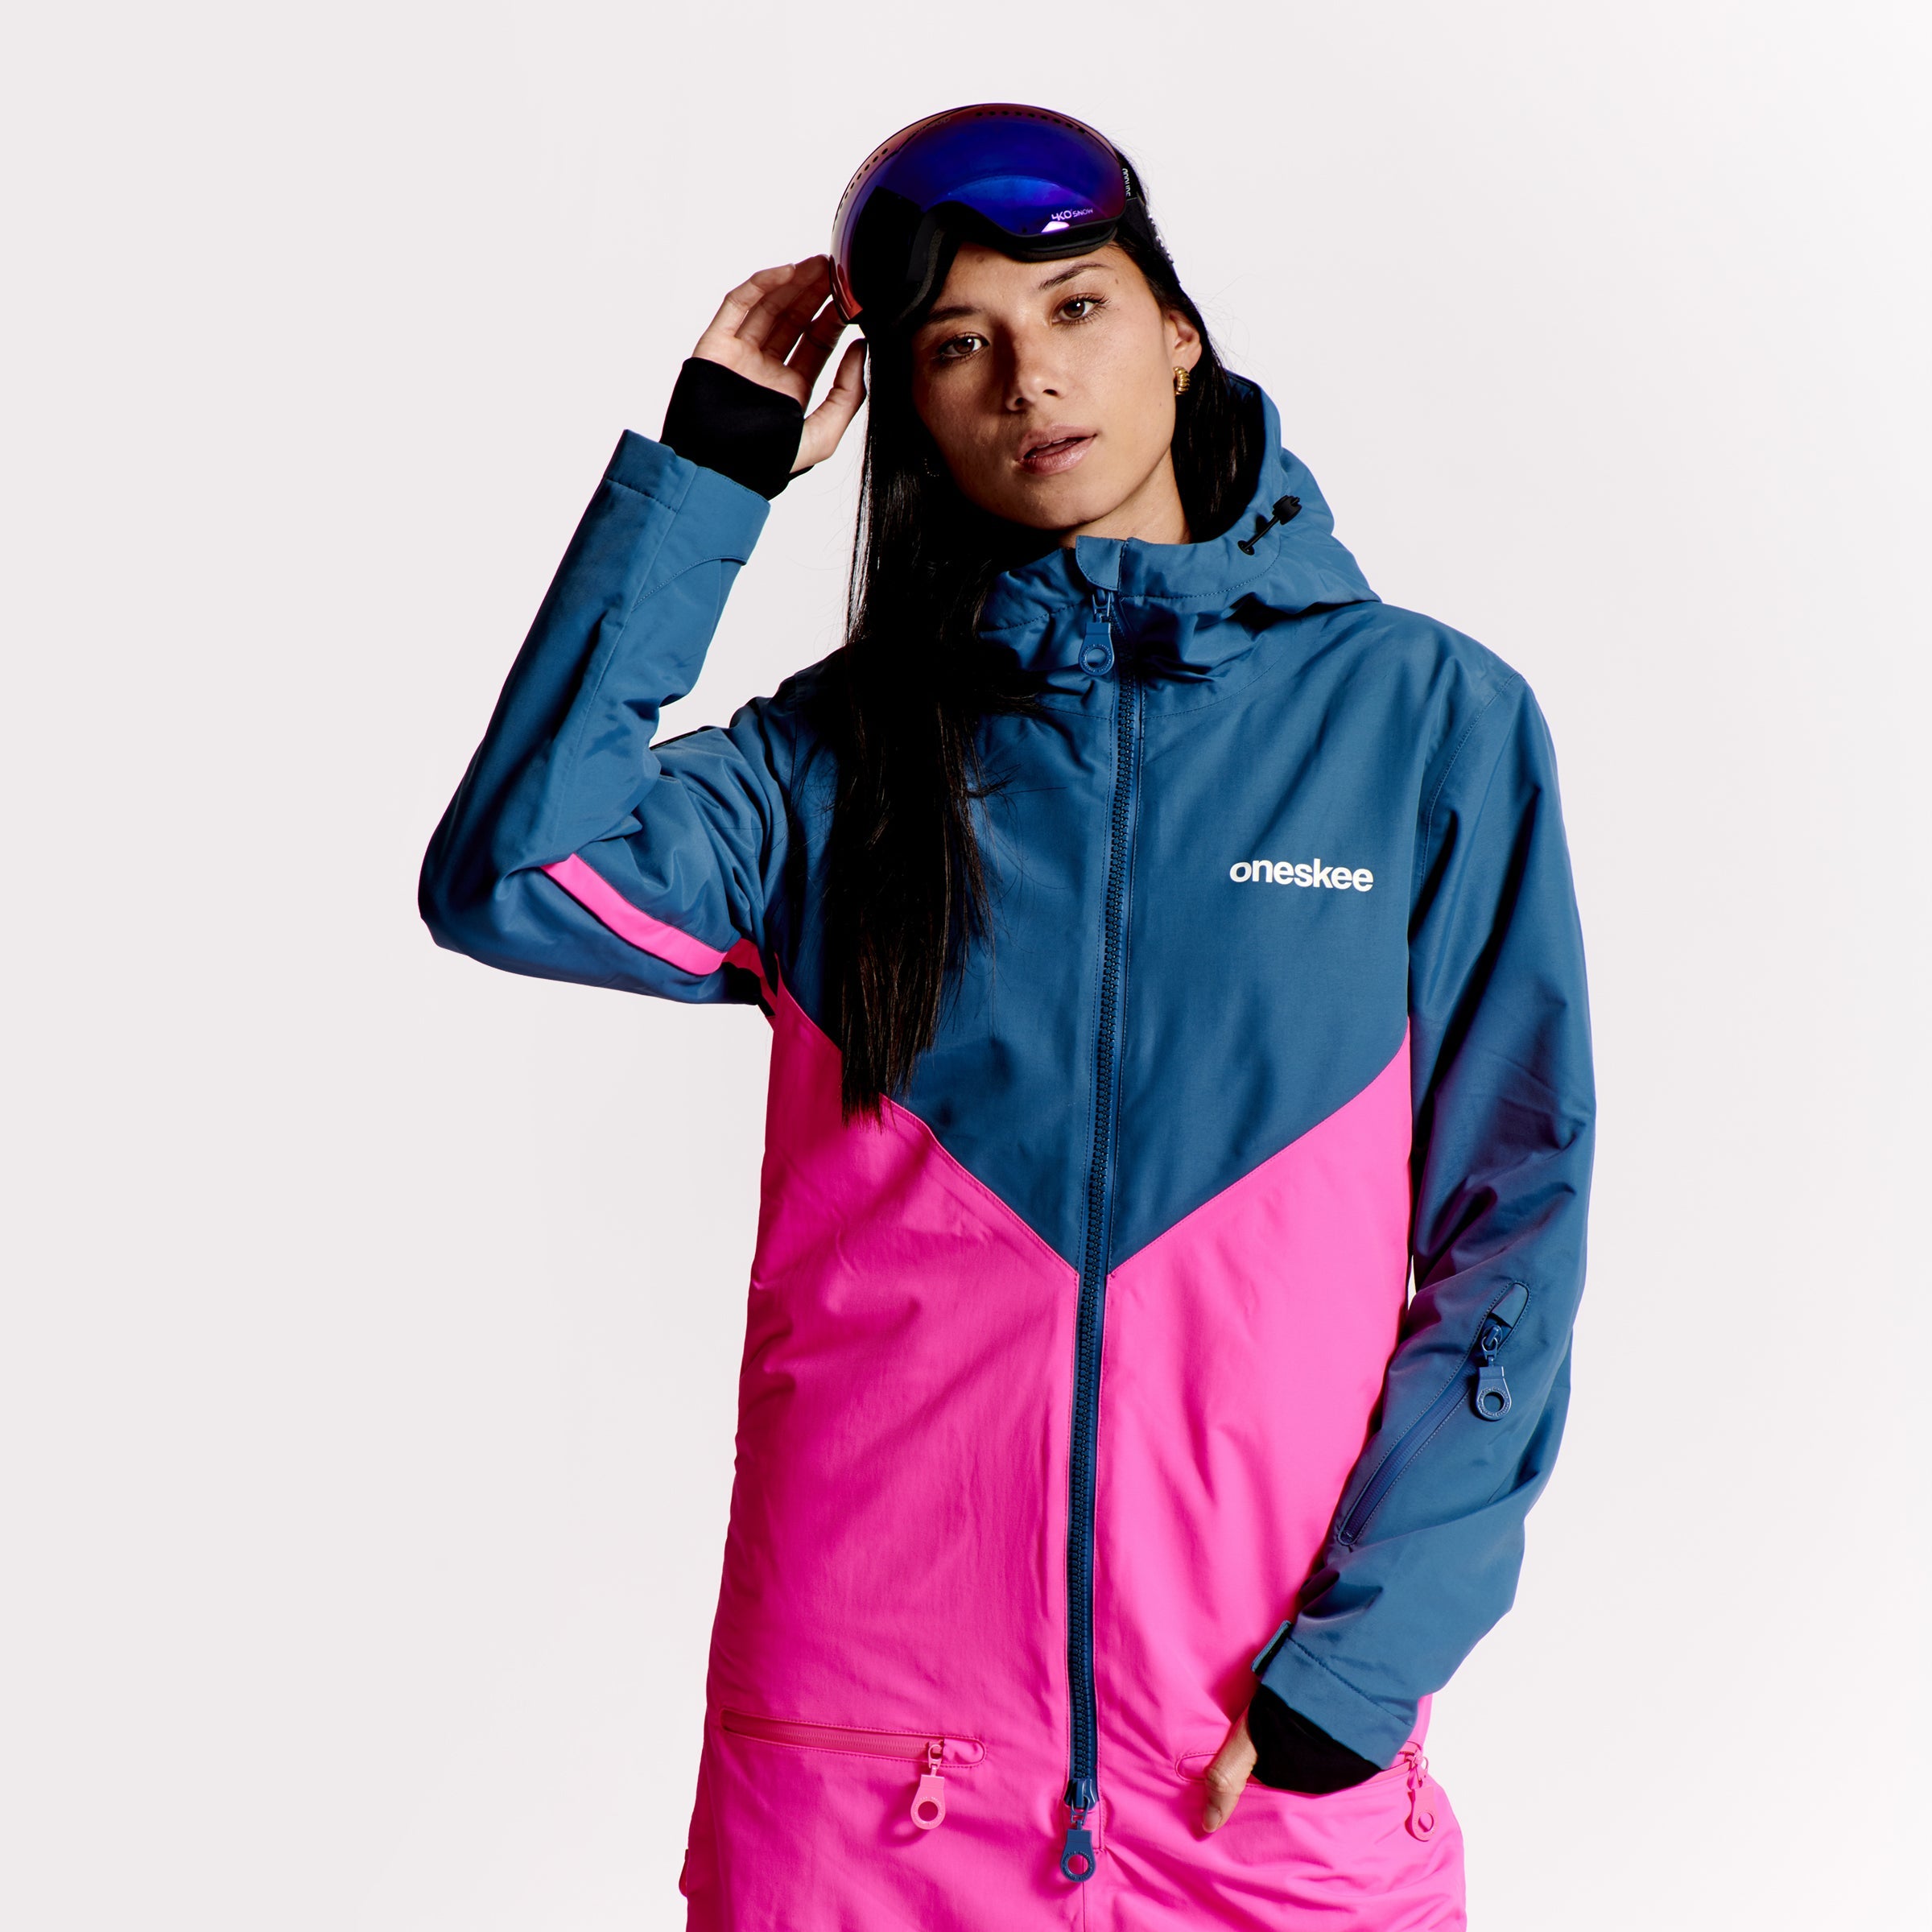 Women's Snow Suit, Neon Pink - Oneskee EU